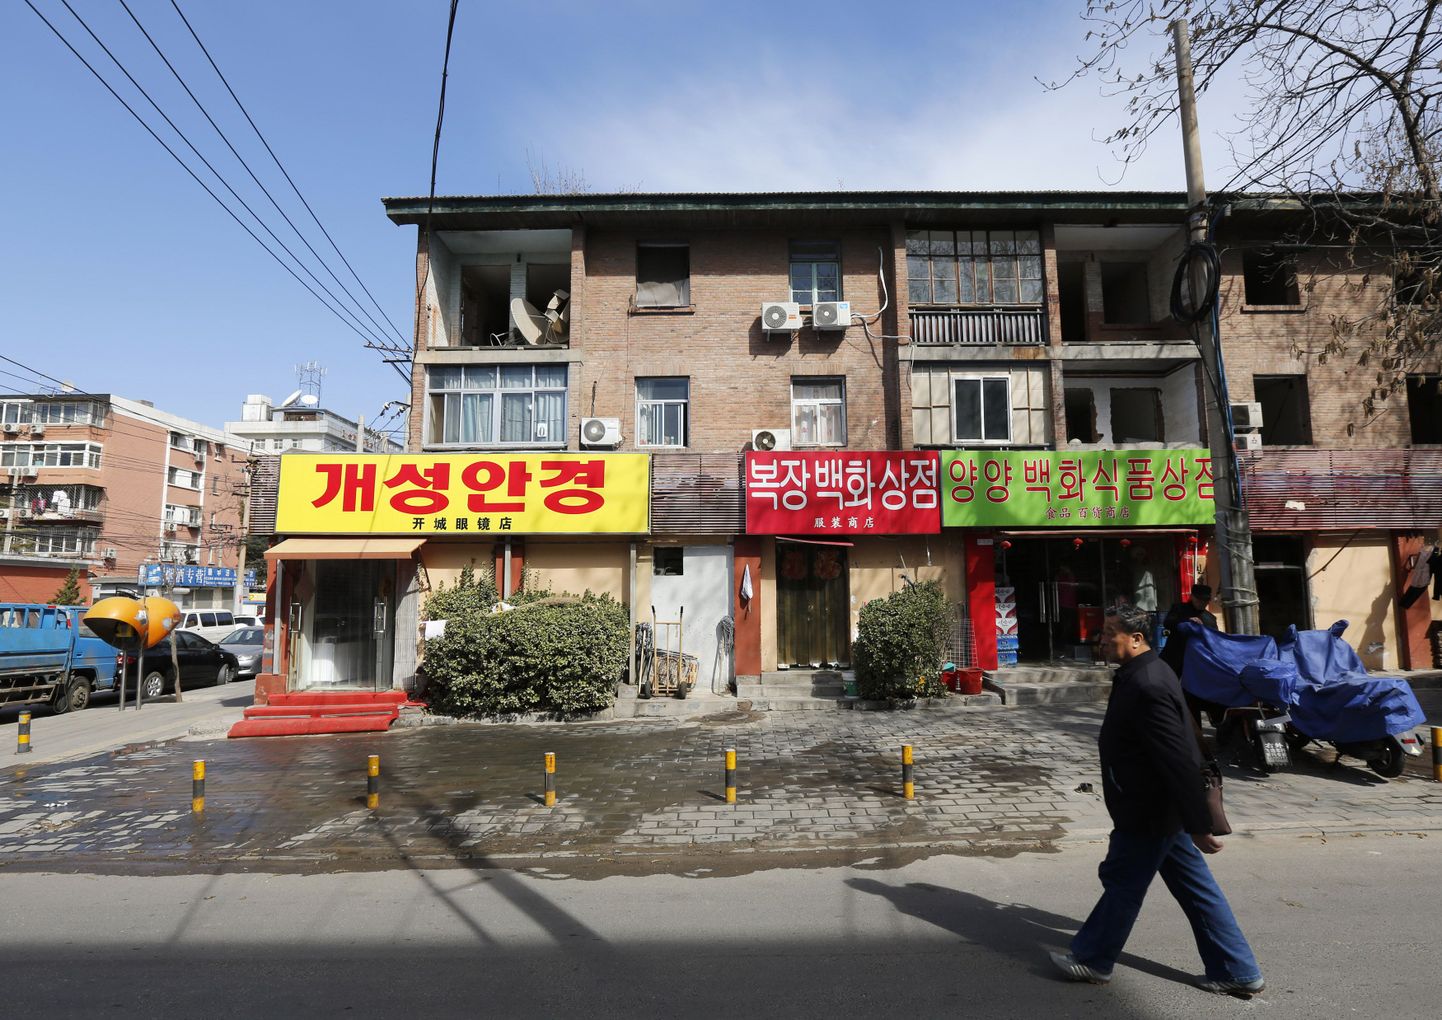 Igas Põhja-Korea kodus leidub vähemalt üks keelatud ese